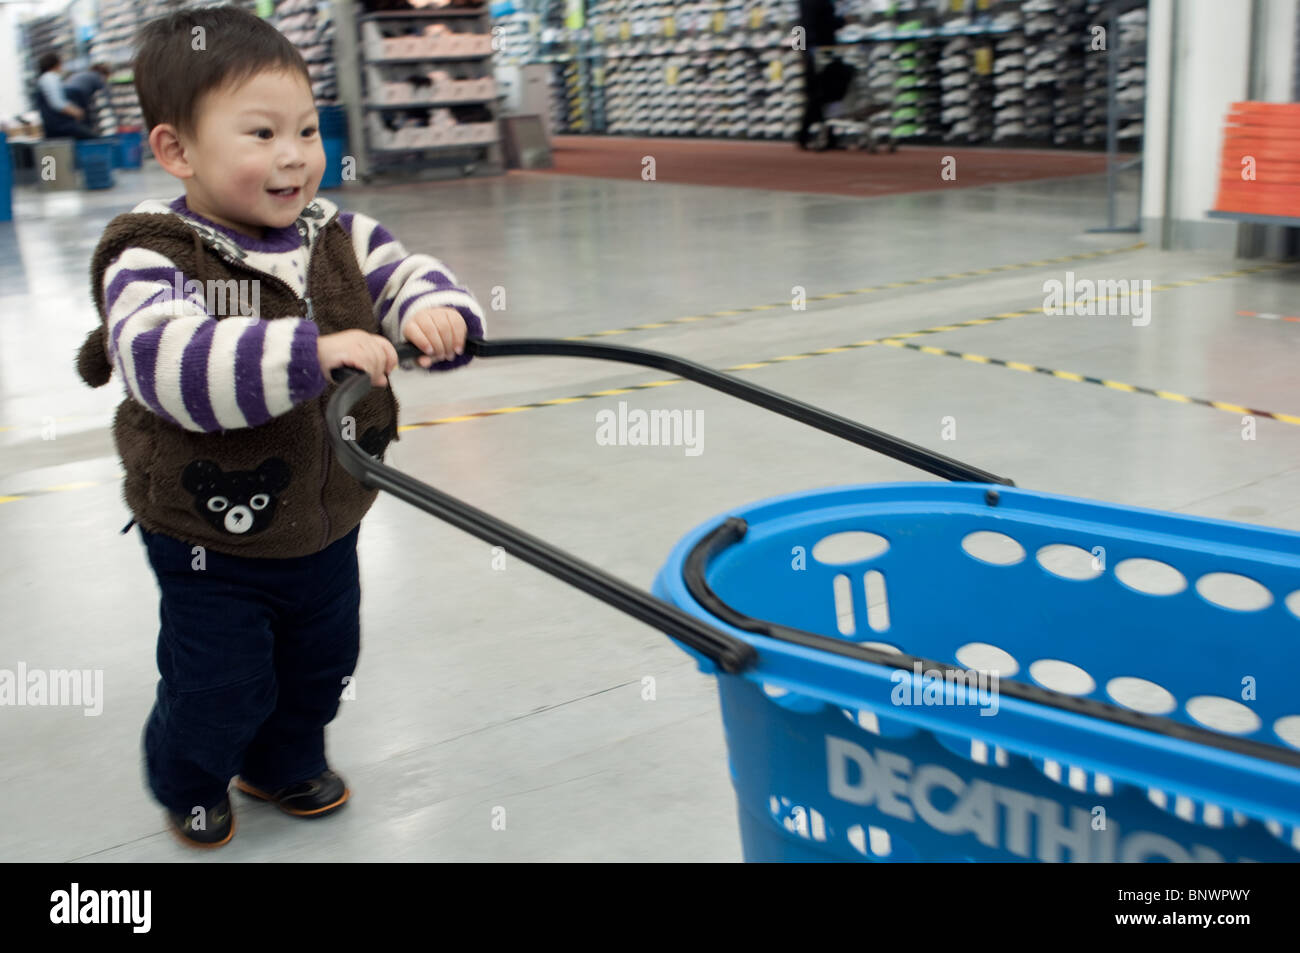 Un enfant dans un magasin Decathlon, Shanghai, Chine Banque D'Images